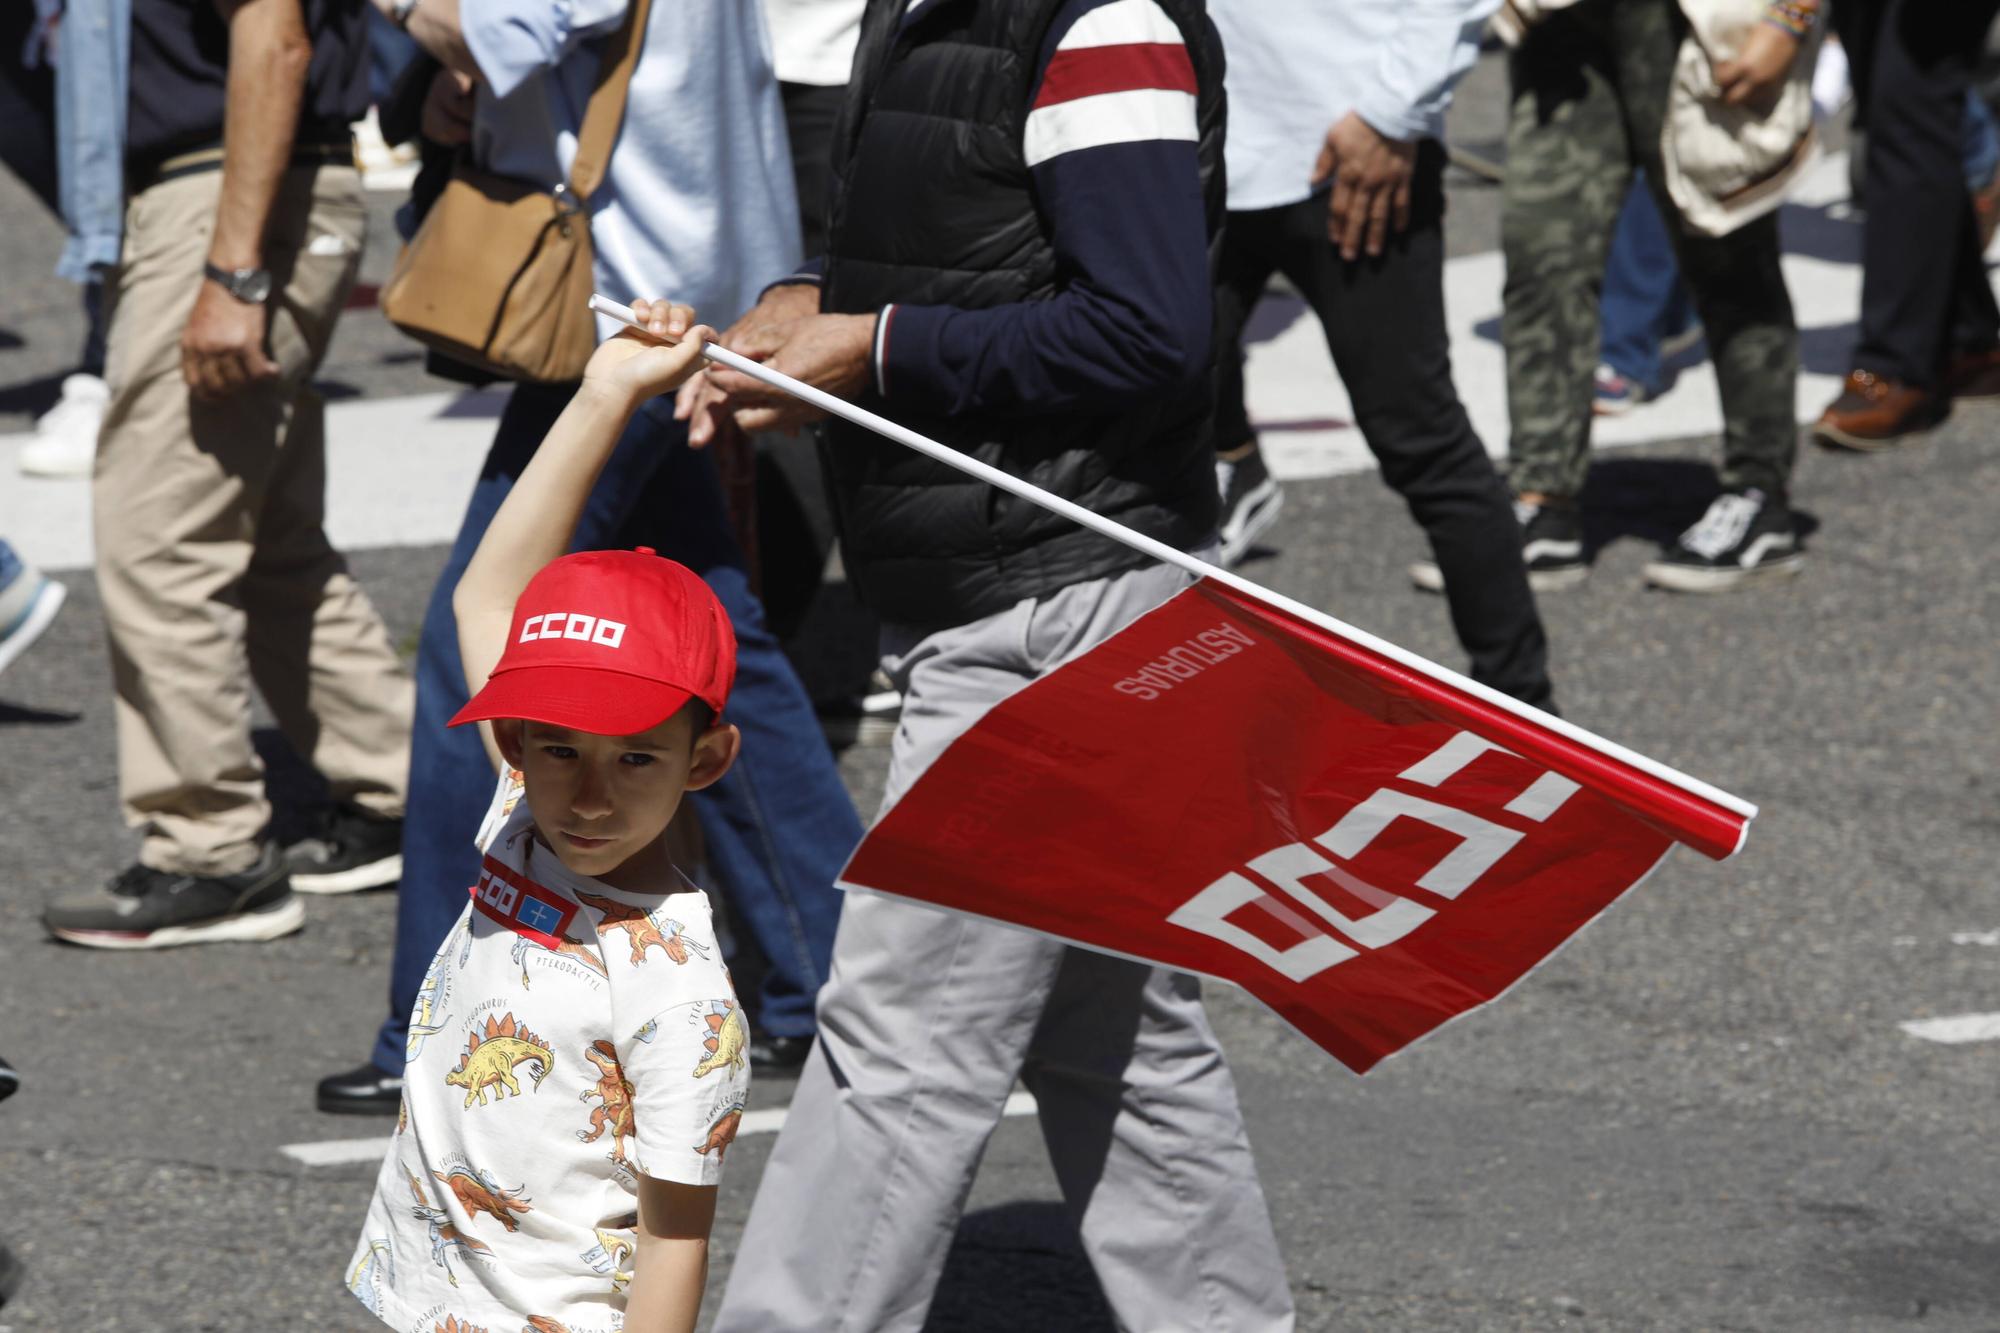 EN IMÁGENES: Los sindicatos asturianos se lanzan a la calle en el Primero de Mayo: "O subida de salarios o bronca en las calles"